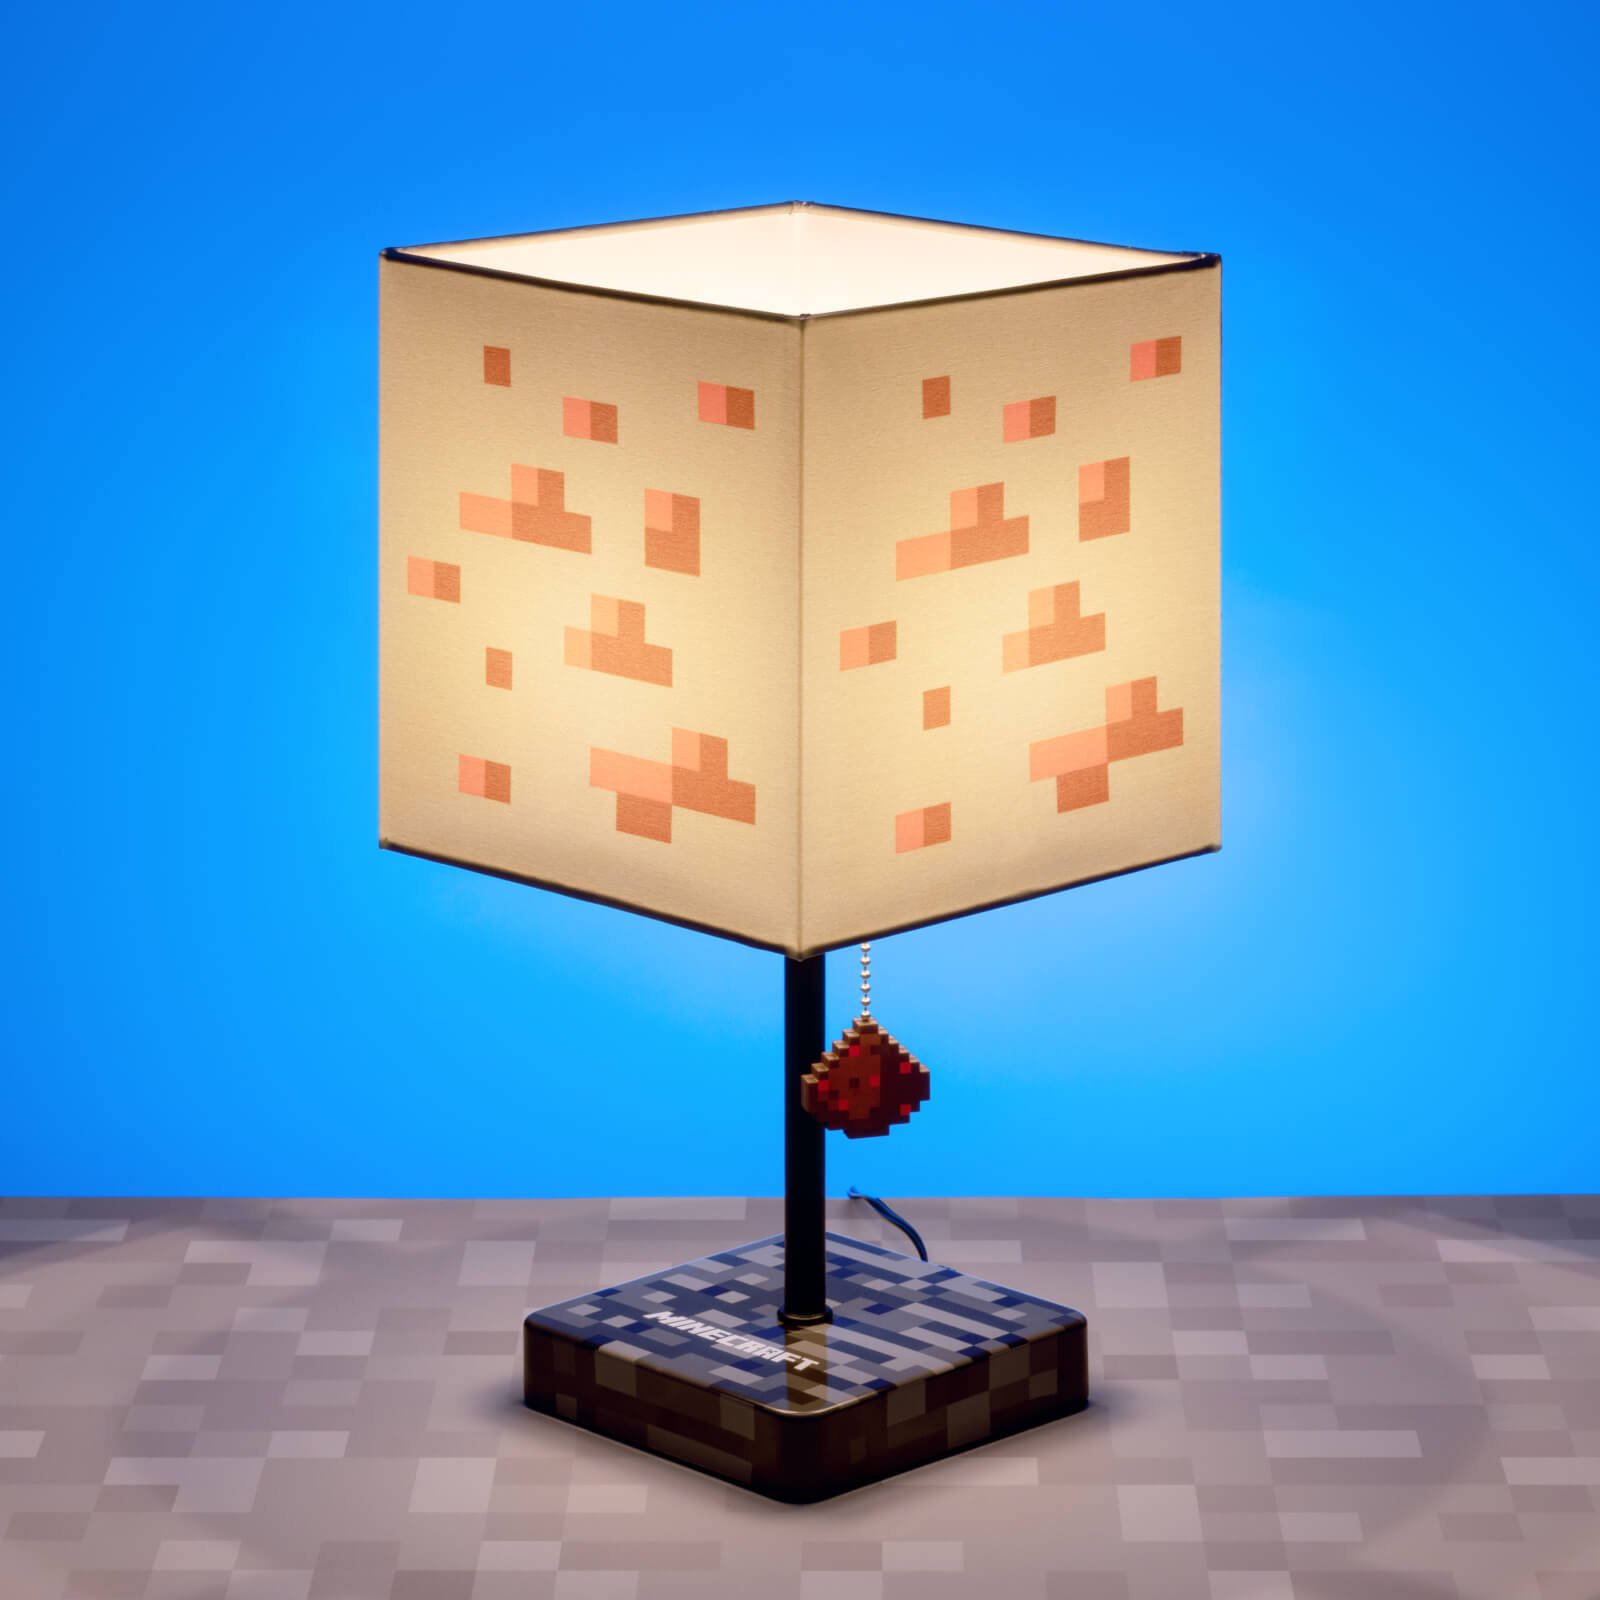 Уличный фонарь майнкрафт. Майнкрафт Redstone Lamp. Редстоун лампа в Minecraft. Редстоуновый светильник майнкрафт. Лампа майнкрафт 1.14.